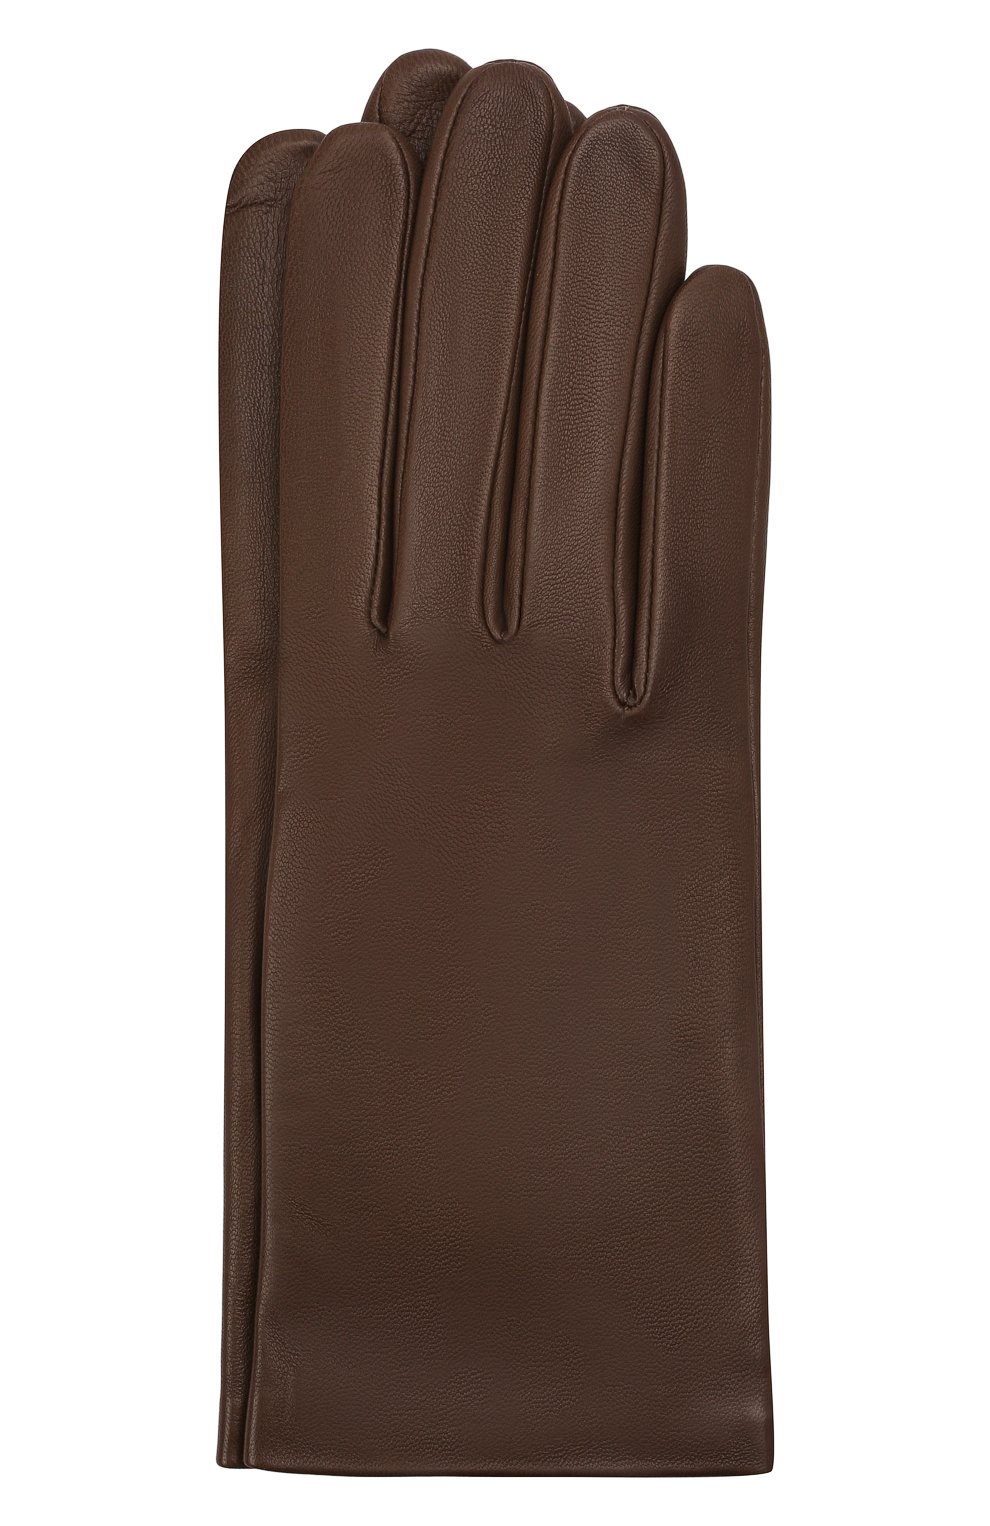 Перчатки Agnelle, Кожаные перчатки с подкладкой из шелка Agnelle, Филиппины, Бежевый, Кожа: 100%; Подкладка-шелк: 100%;, 1769025  - купить